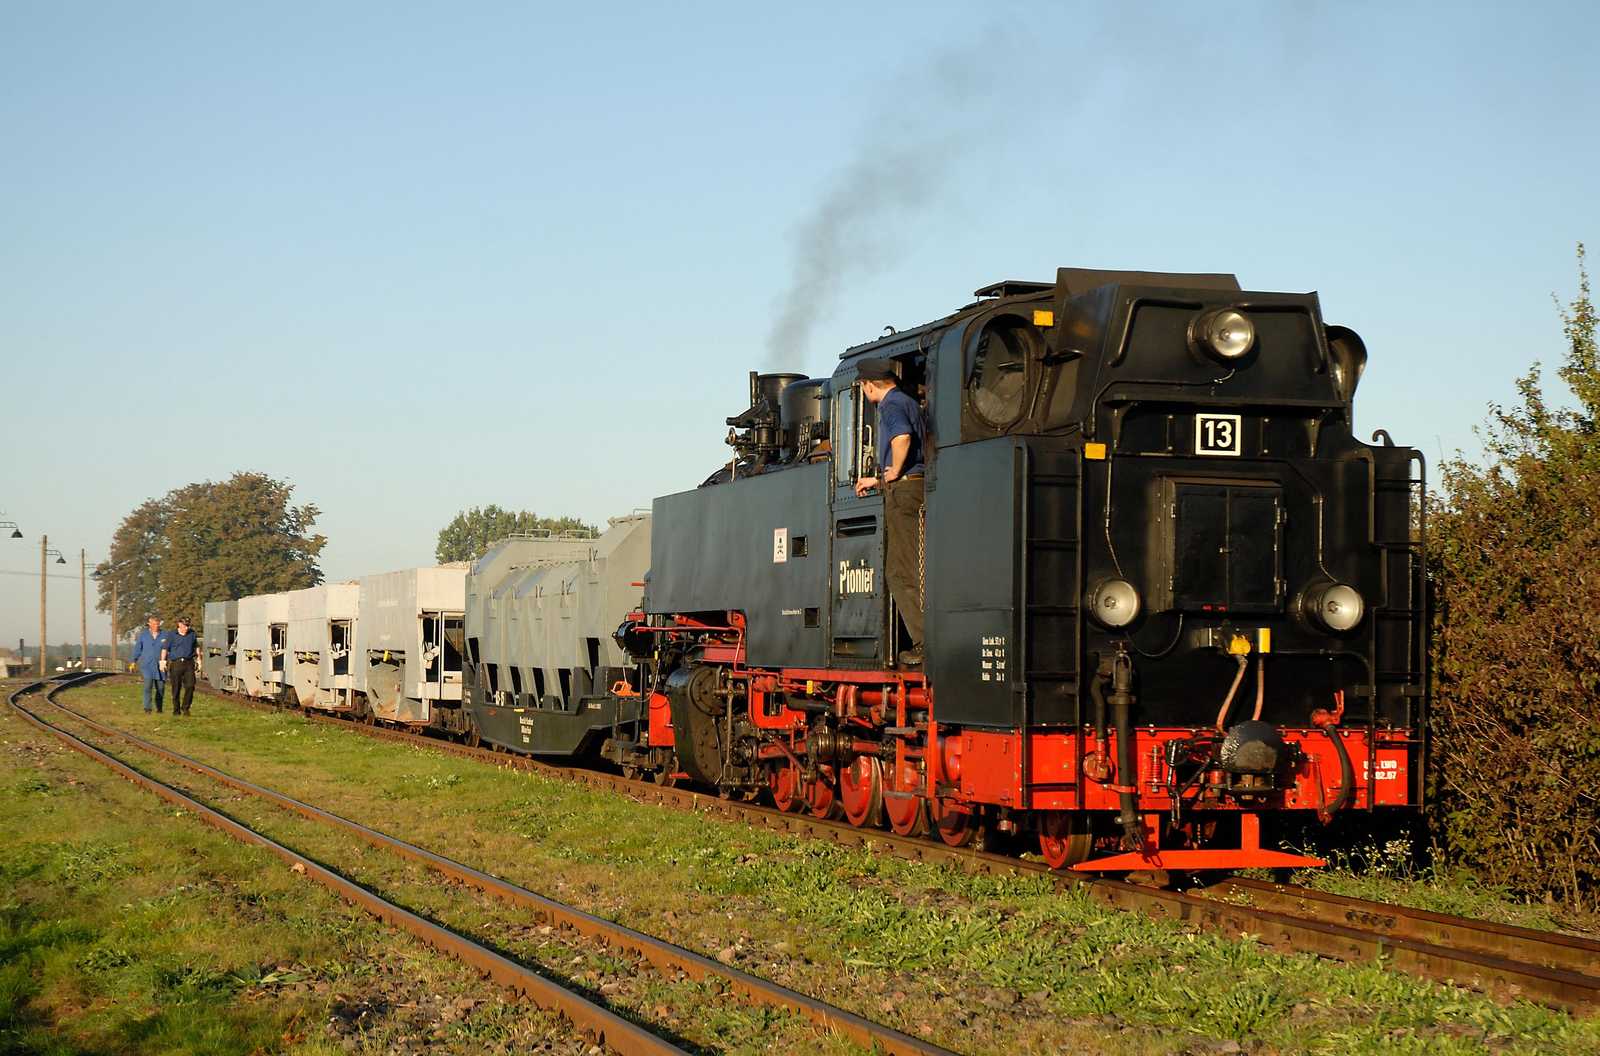 Lok 13 bzw. 99 773 mit einem typischen Mansfeld-Zug.